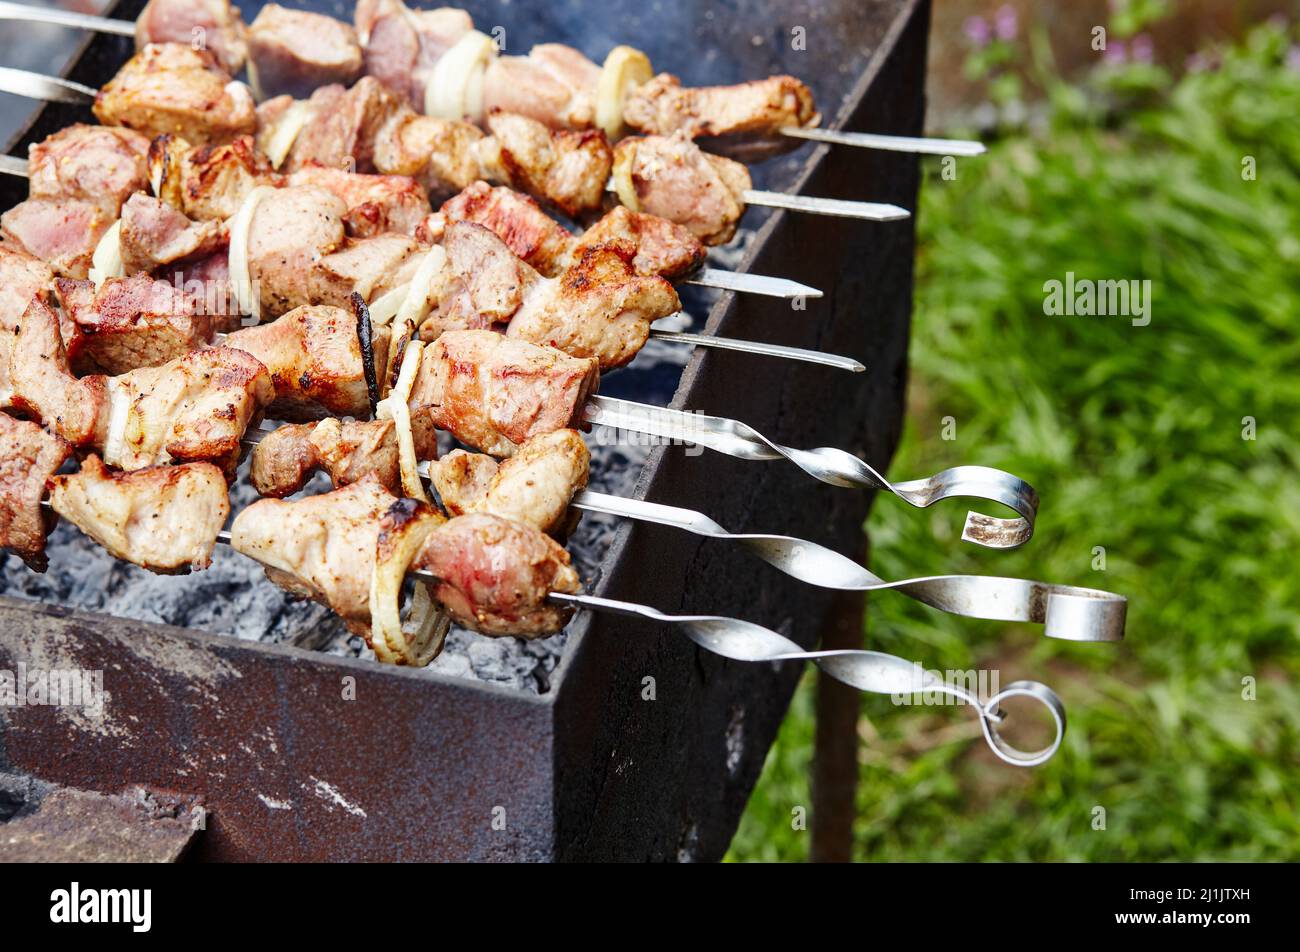 Shashlik mariné se préparant sur un barbecue au charbon de bois. Shashlik russe traditionnel sur une brochette à barbecue Banque D'Images